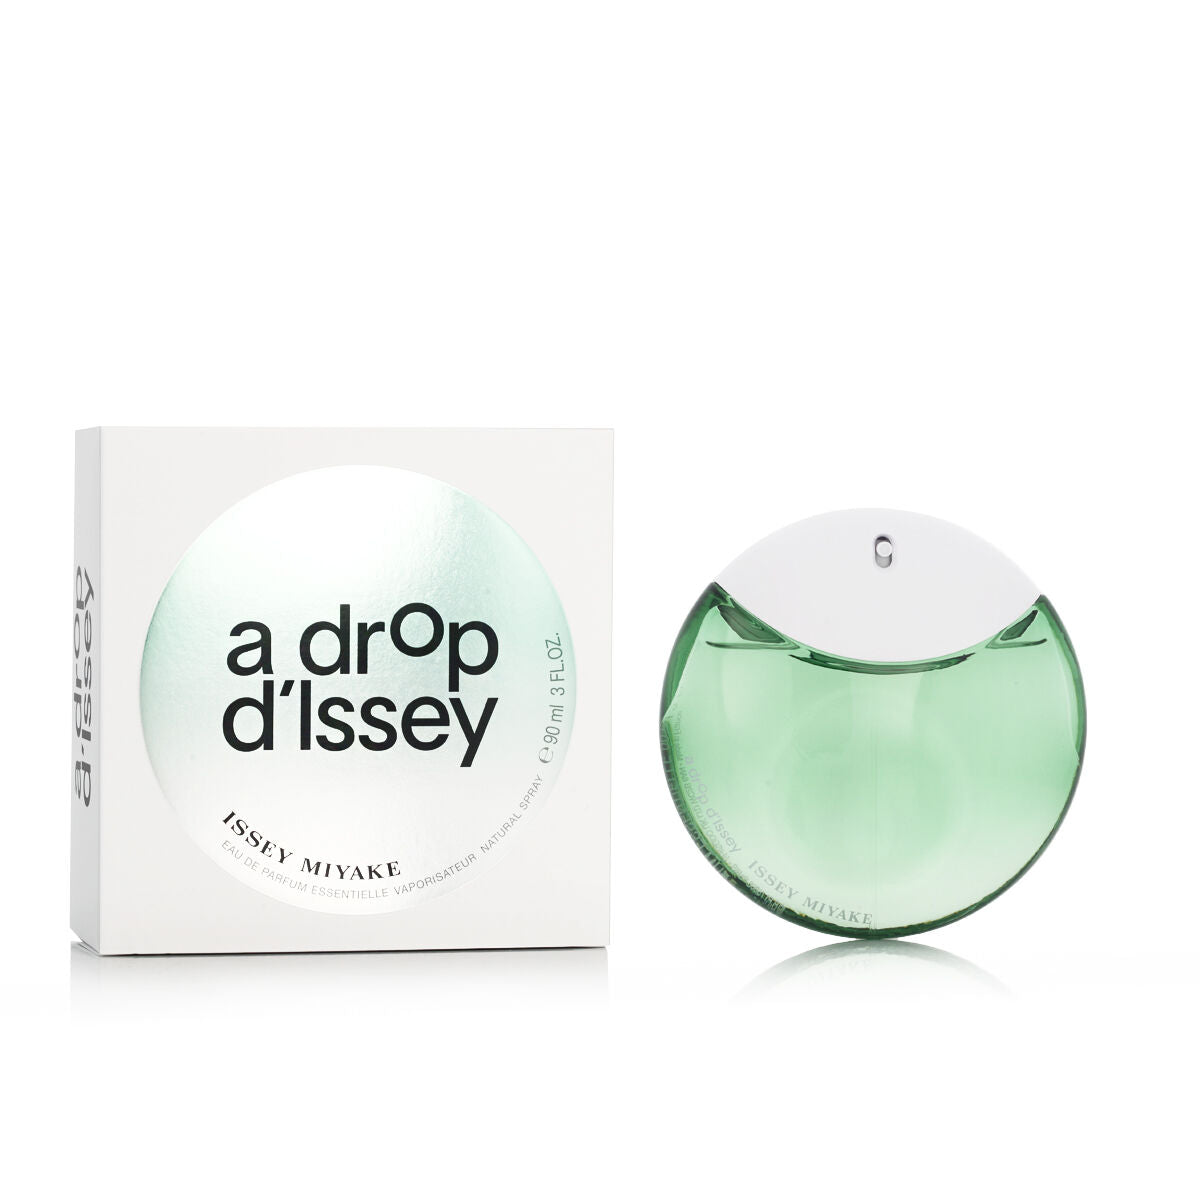 Perfume kobiet Issey Miyake Edp A Drop d'issey Essentielle 90 ml